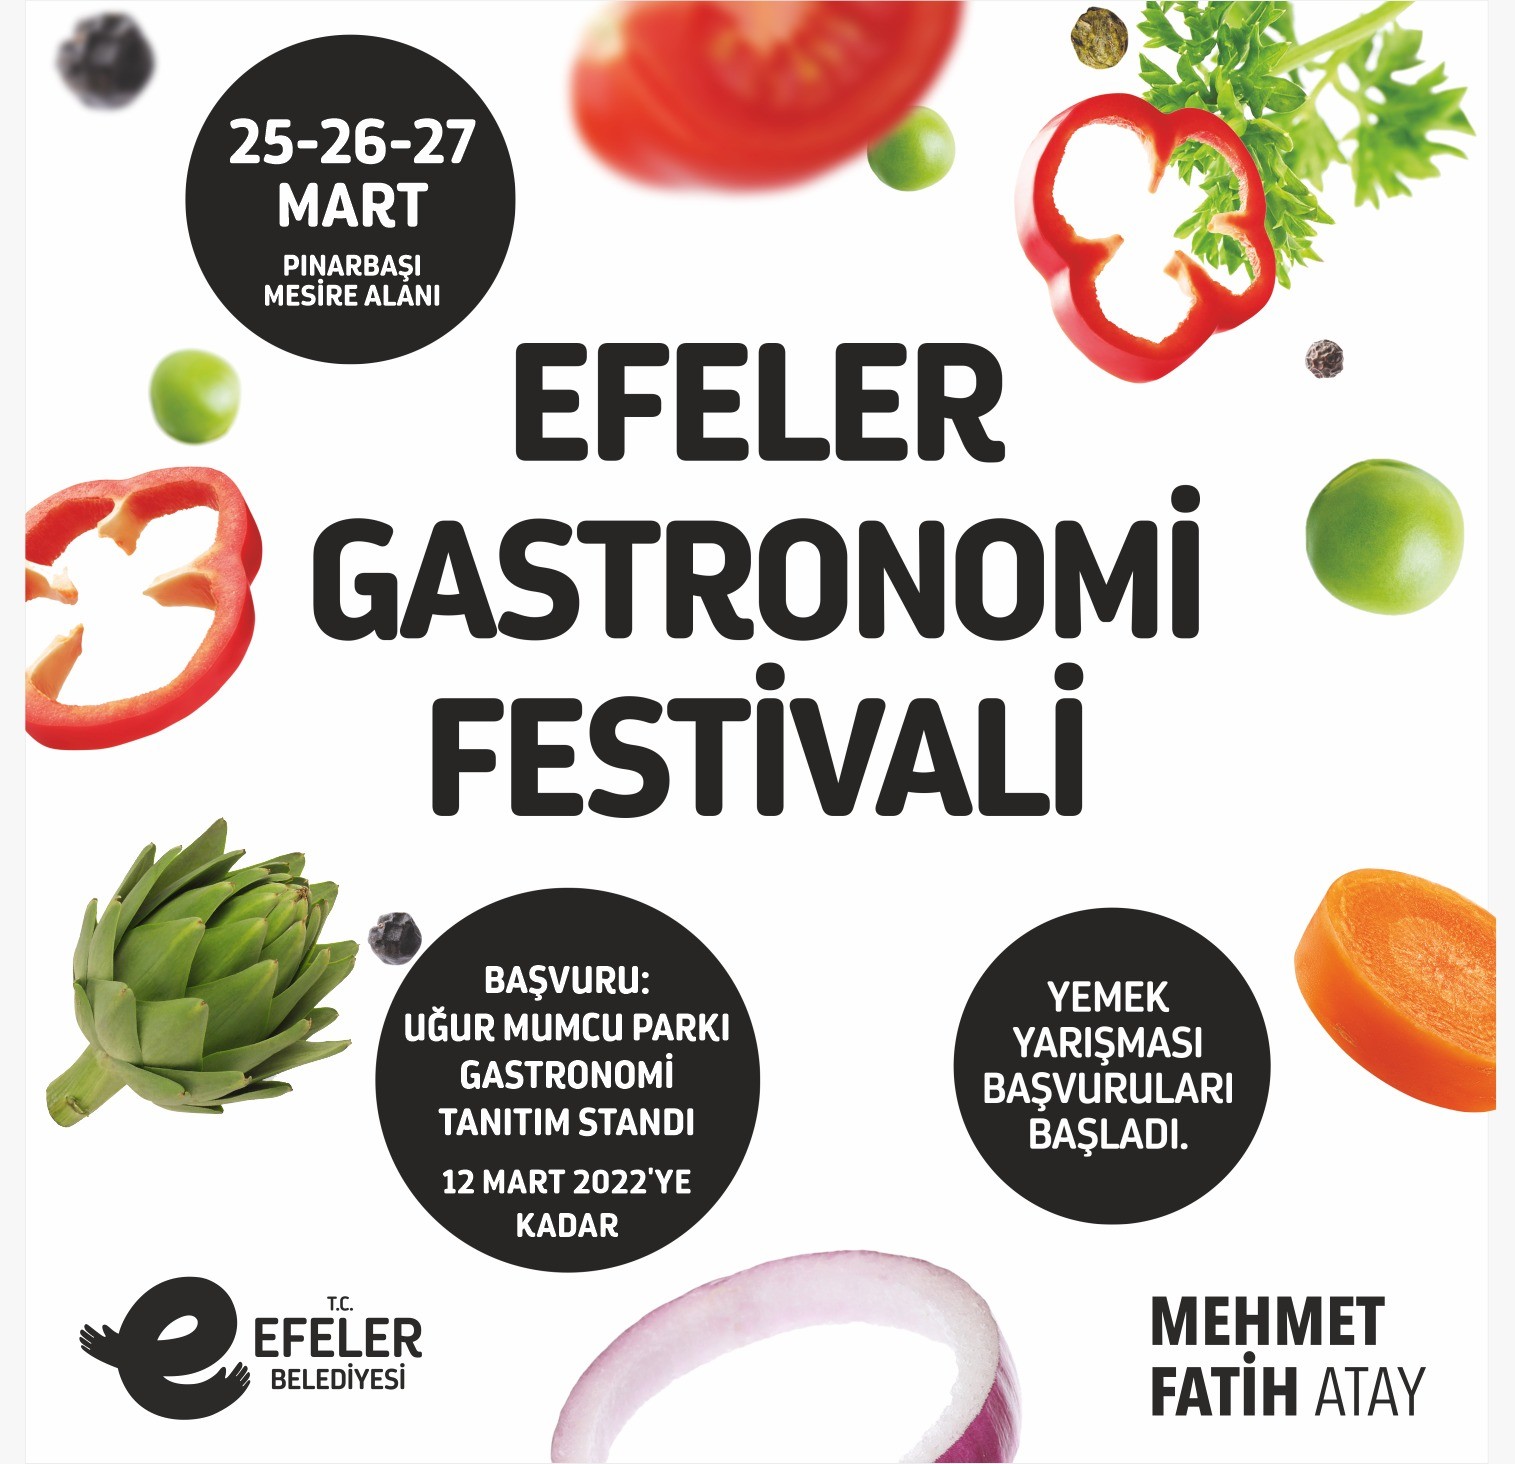 Efeler Gastronomi Festivali için başvurular başladı #aydin